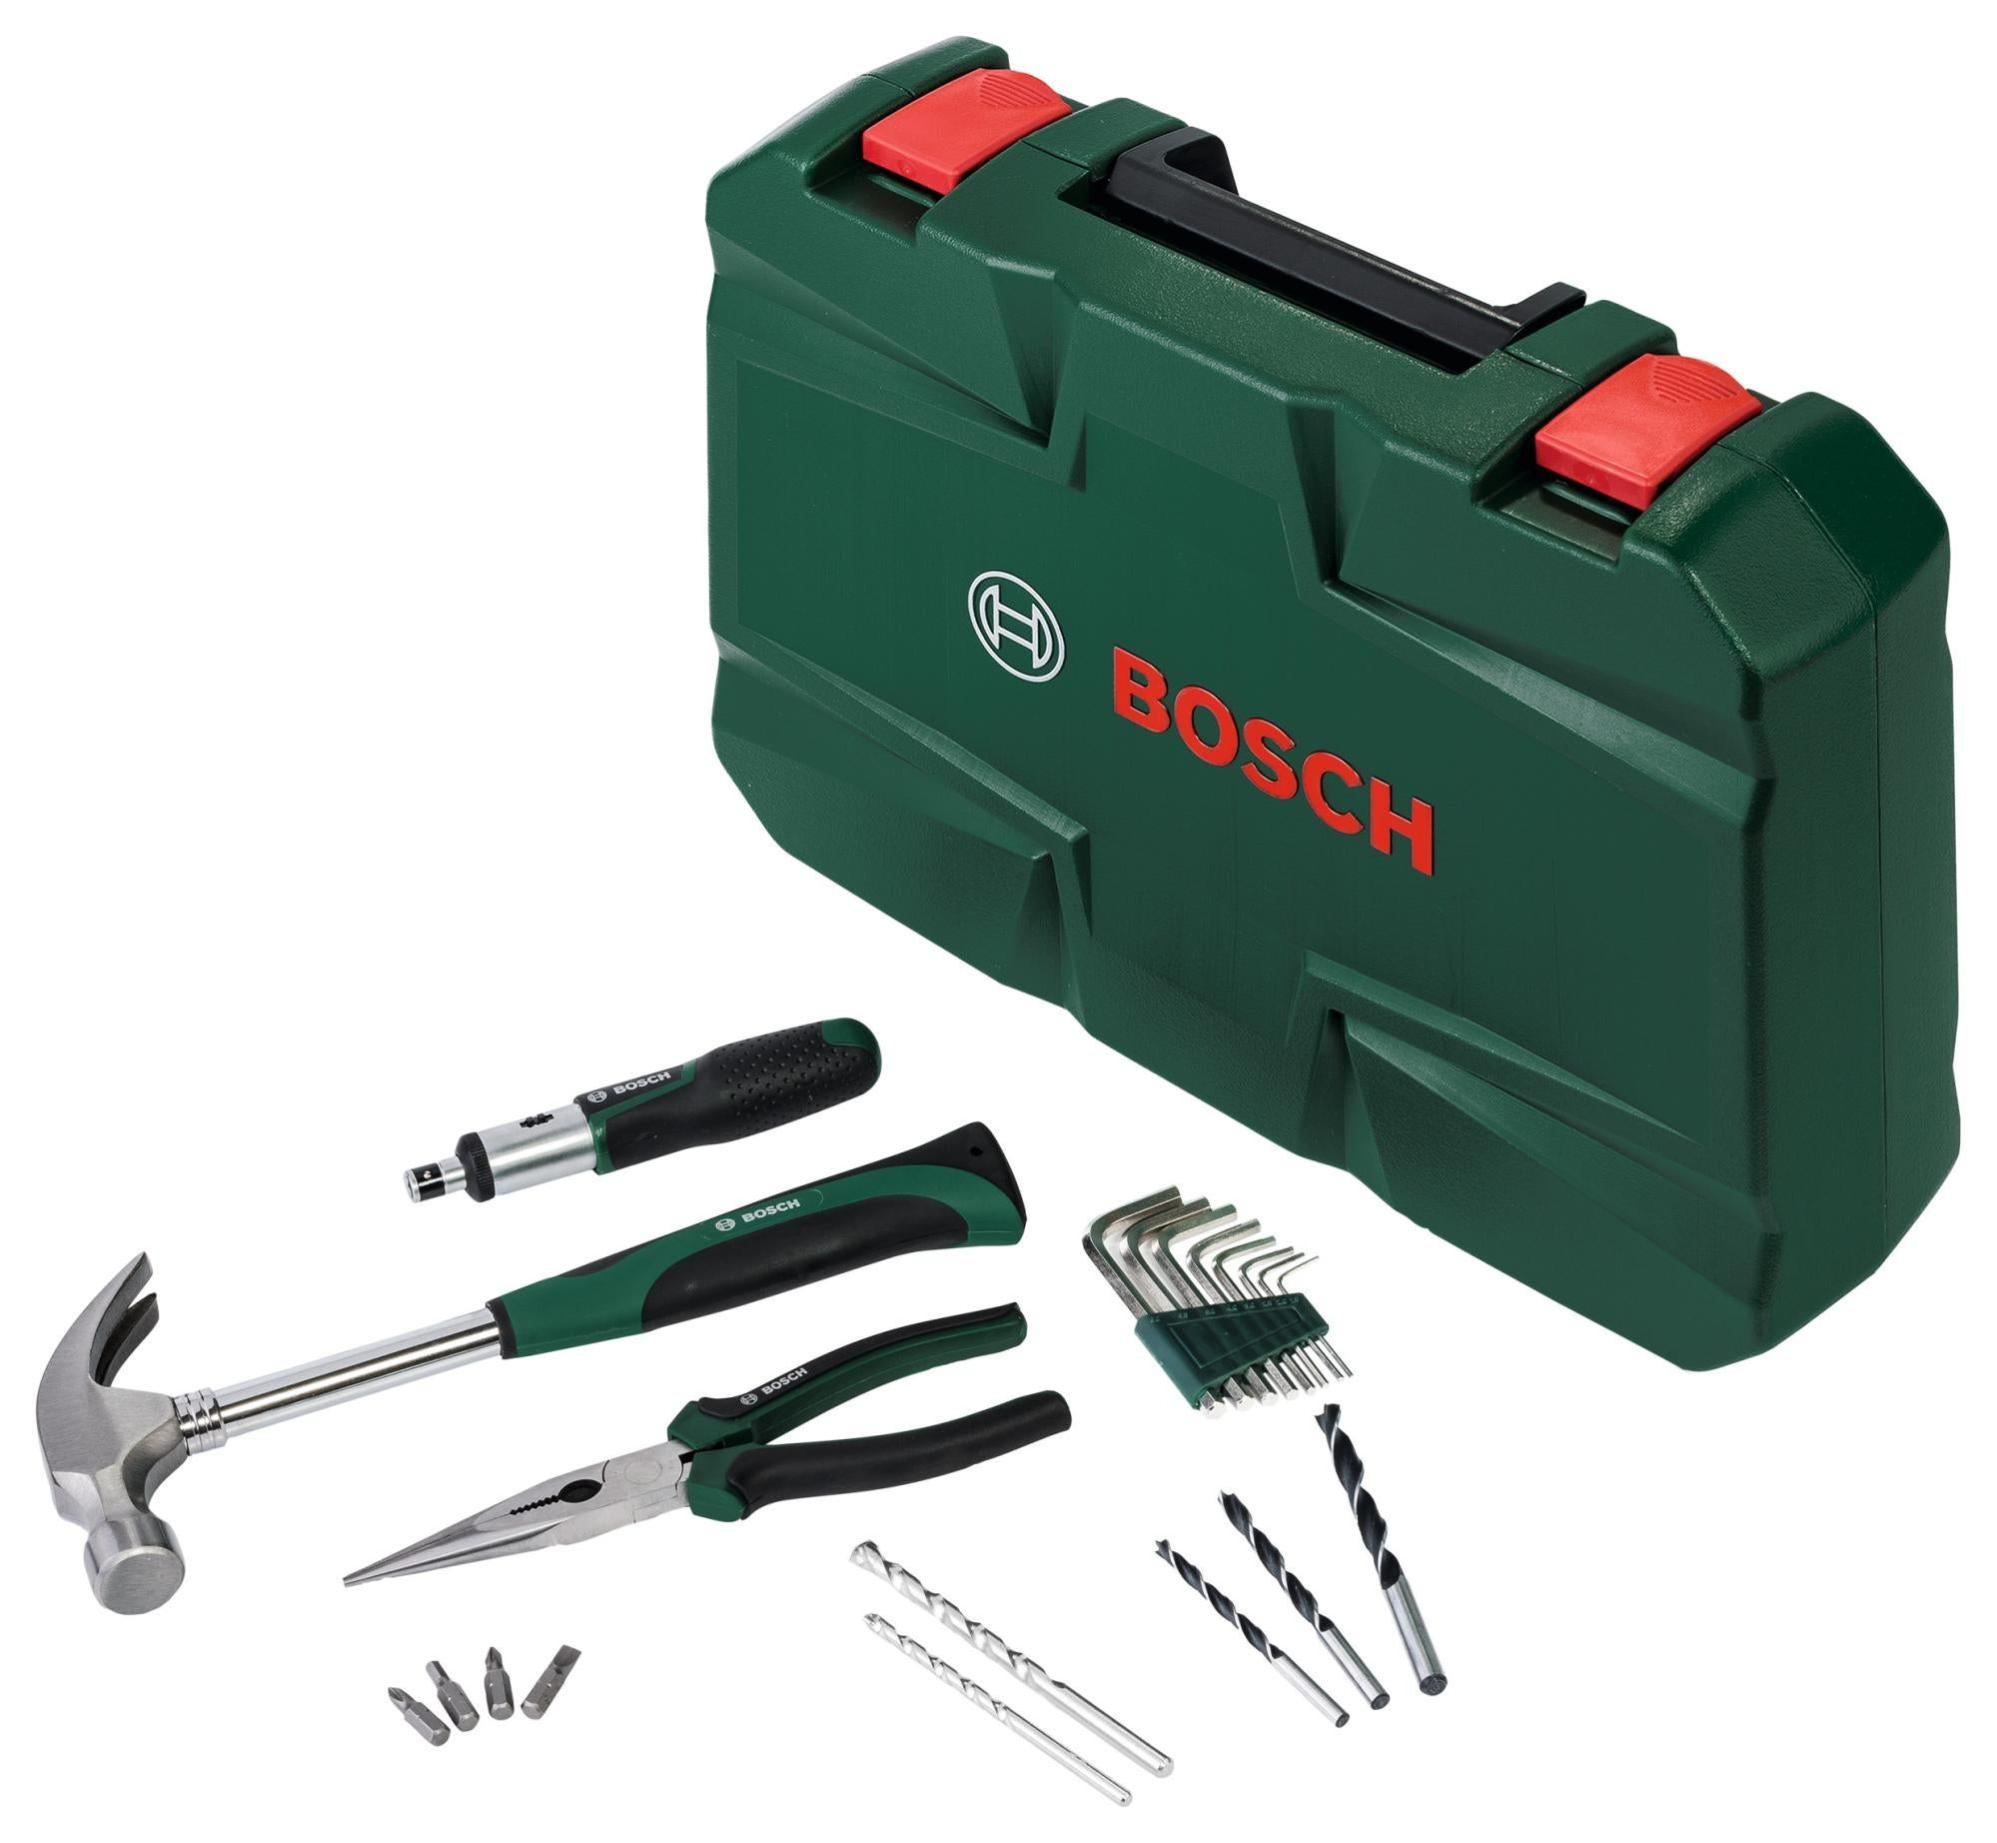 Malette d'outils Bosch pour enfants, avec outils, 17pcs